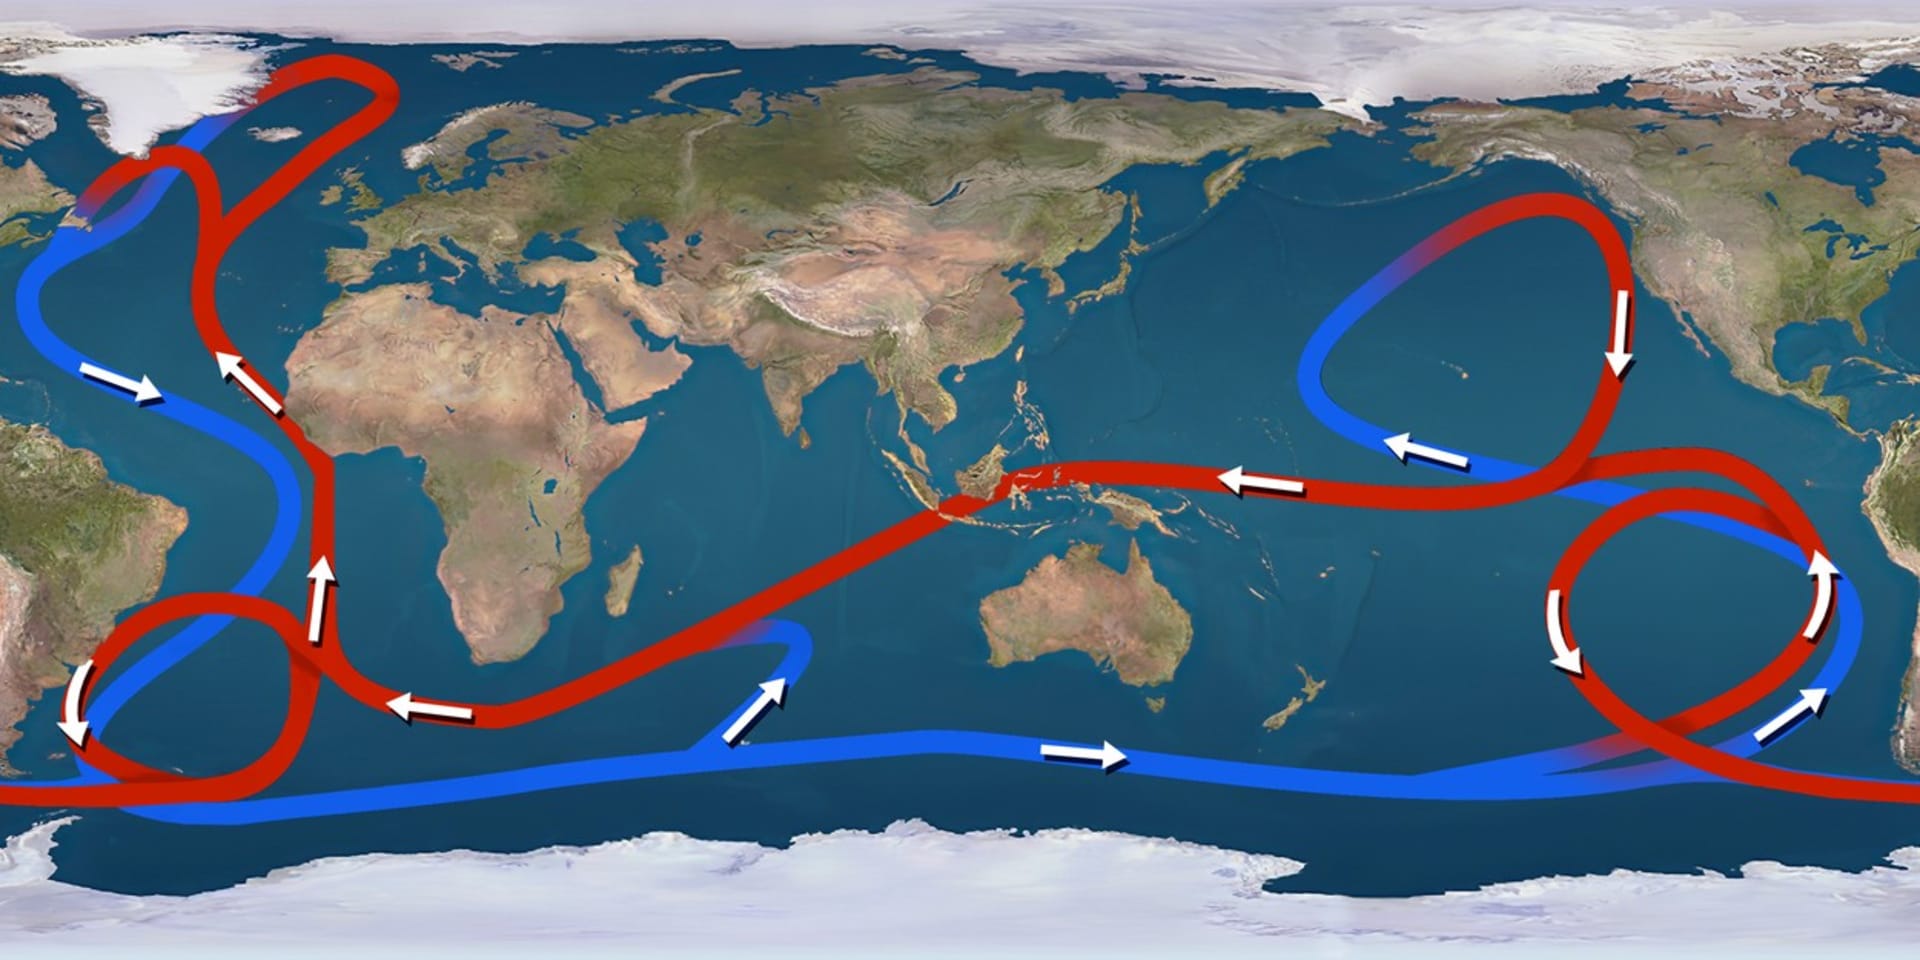 Mapa hlavních oceánských proudů. Modře jsou vyznačené studené a červeně teplé